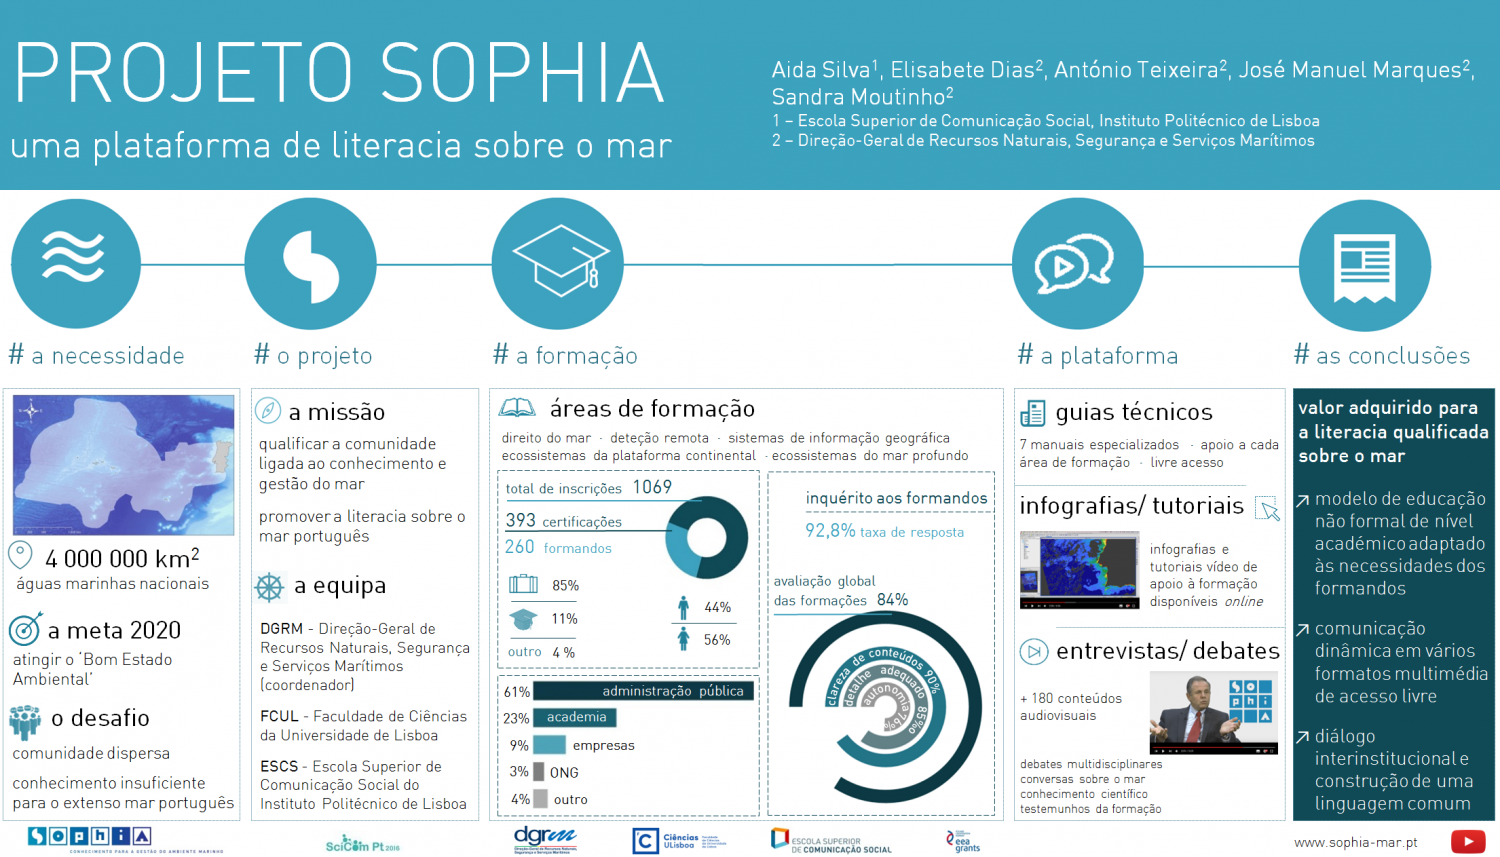 Póster «Projeto SOPHIA: uma plataforma de literacia sobre o mar» apresentado no SciComPT 2016. (Fonte: Projeto SOPHIA)